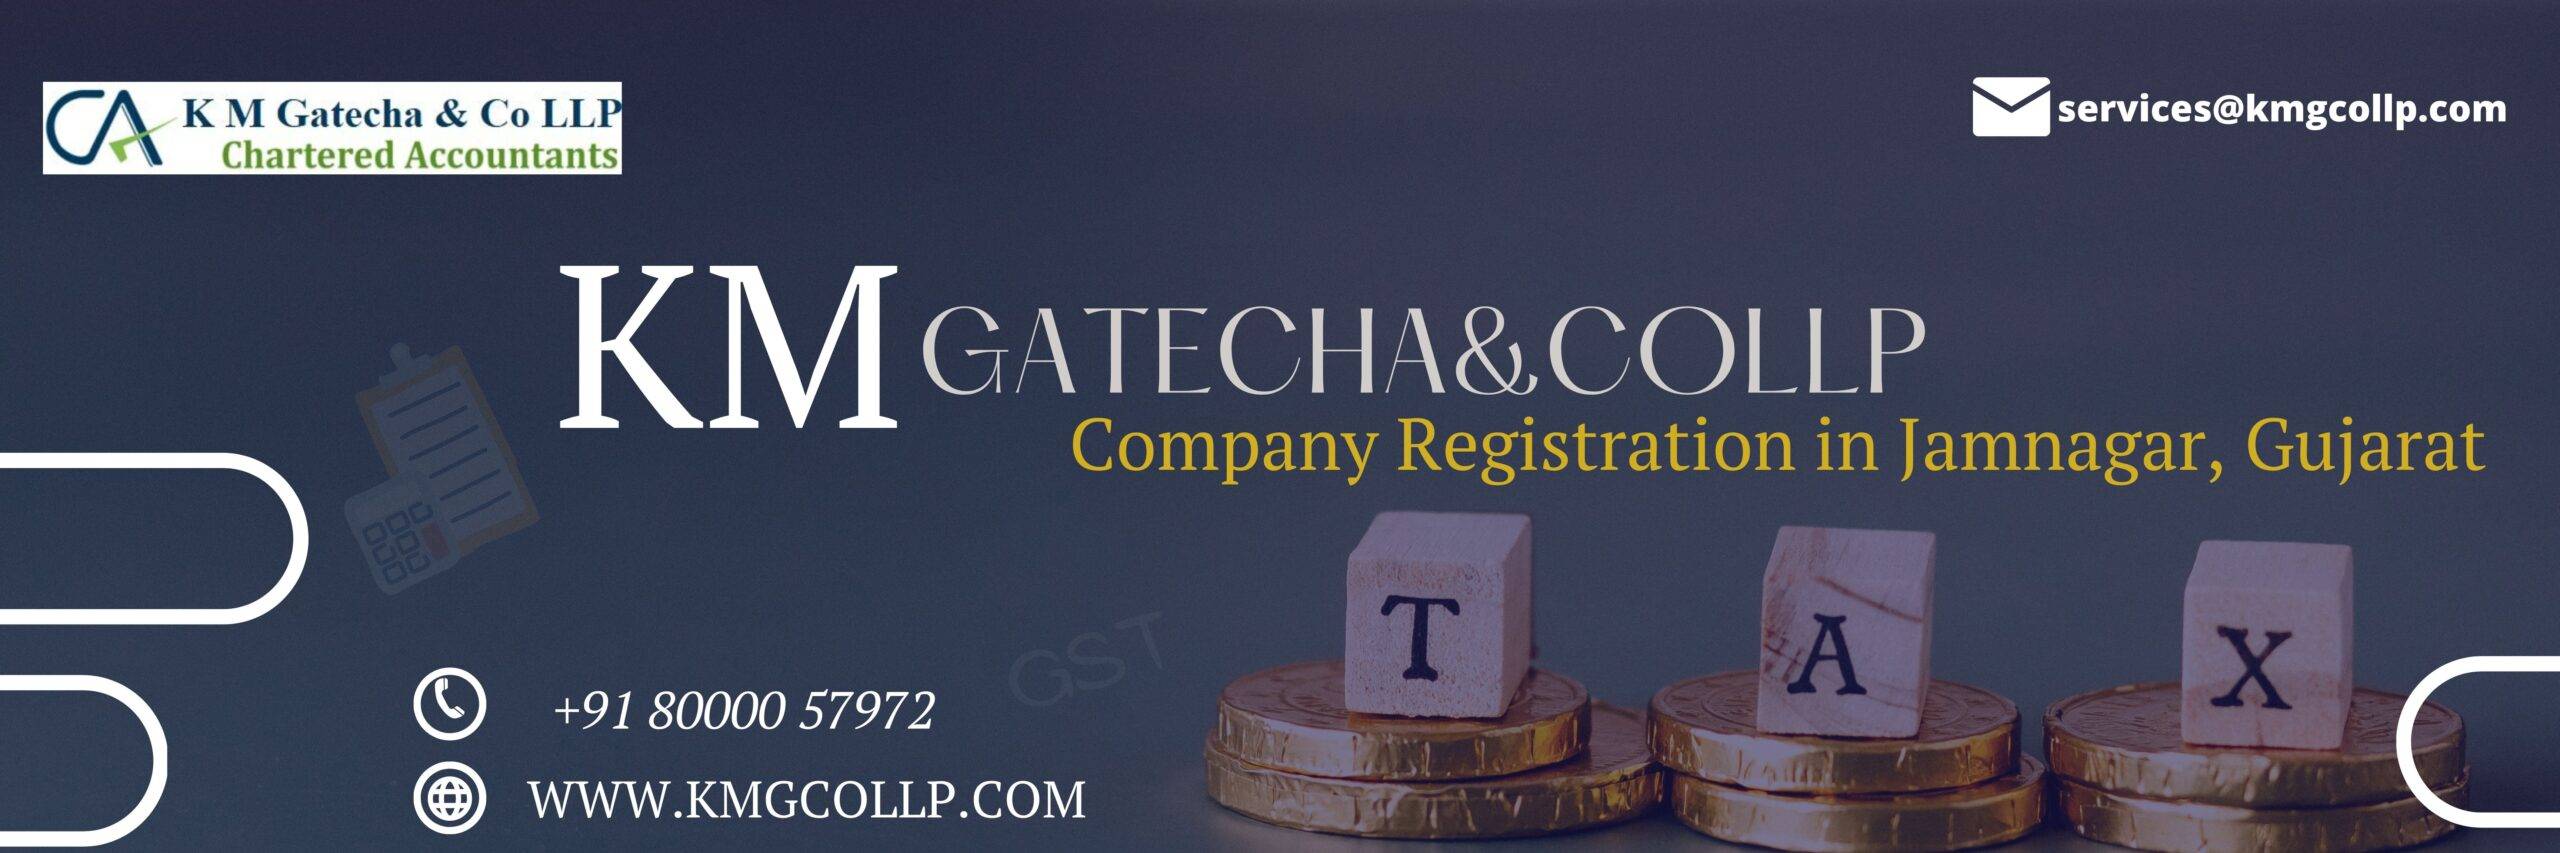 Company Registration in Jamnagar